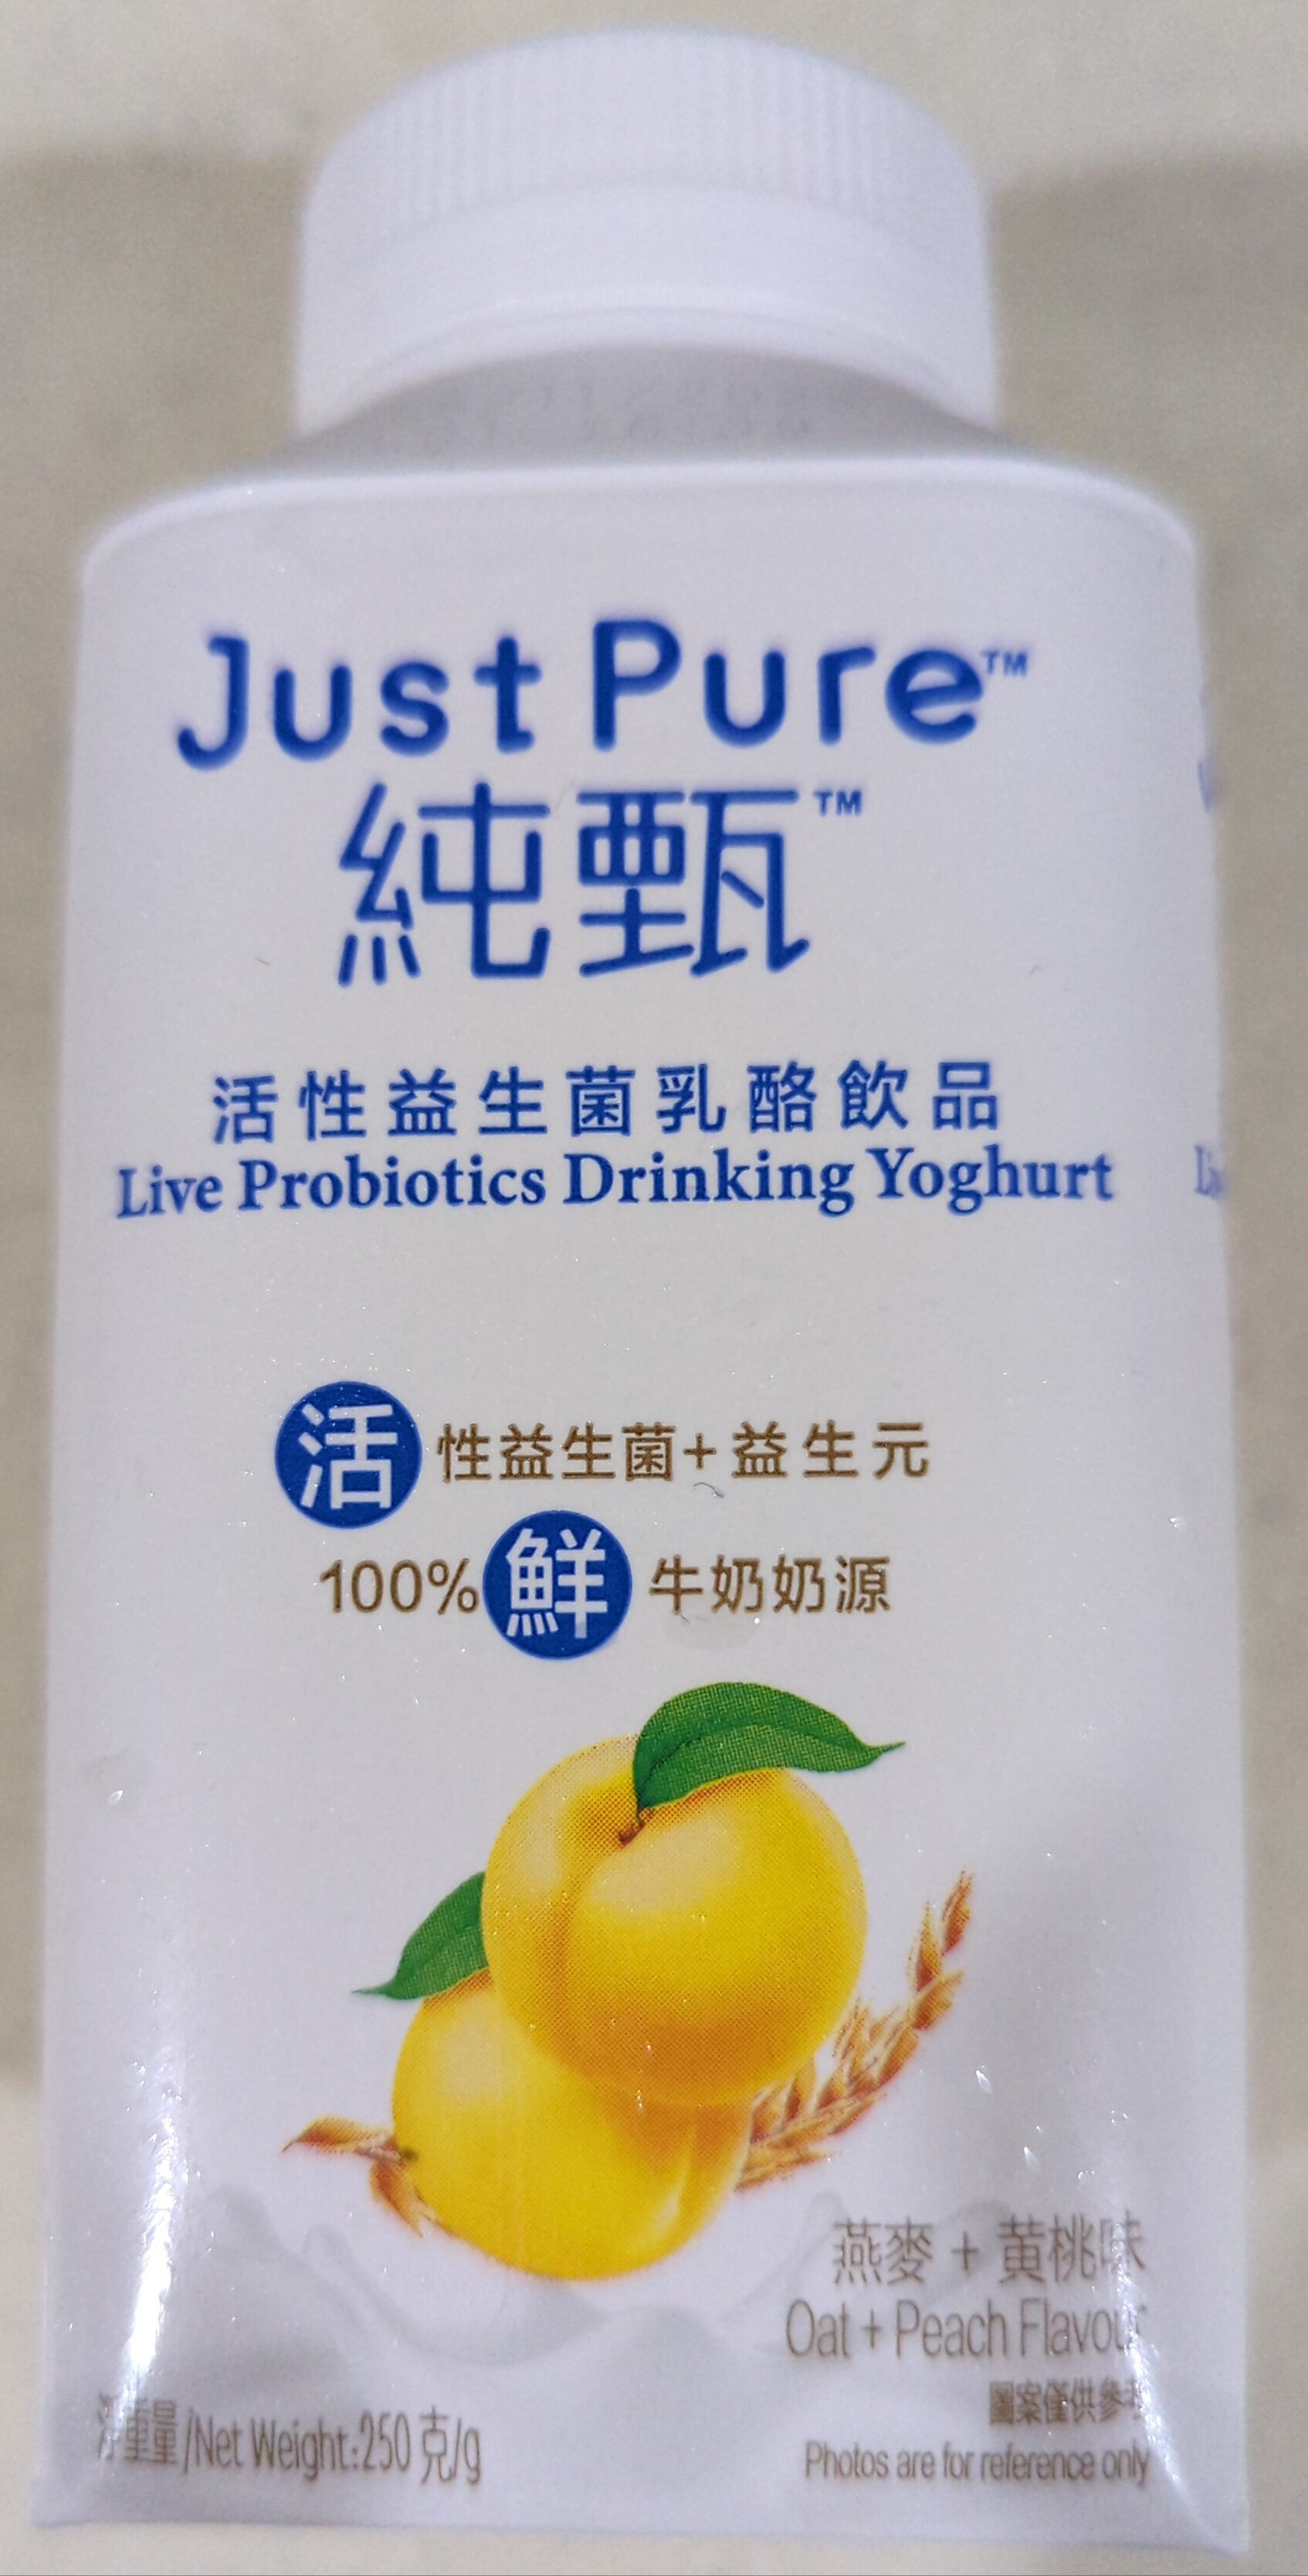 Live Probiotics Drinking Yoghurt Oat + Peach Flavour - Producto - en